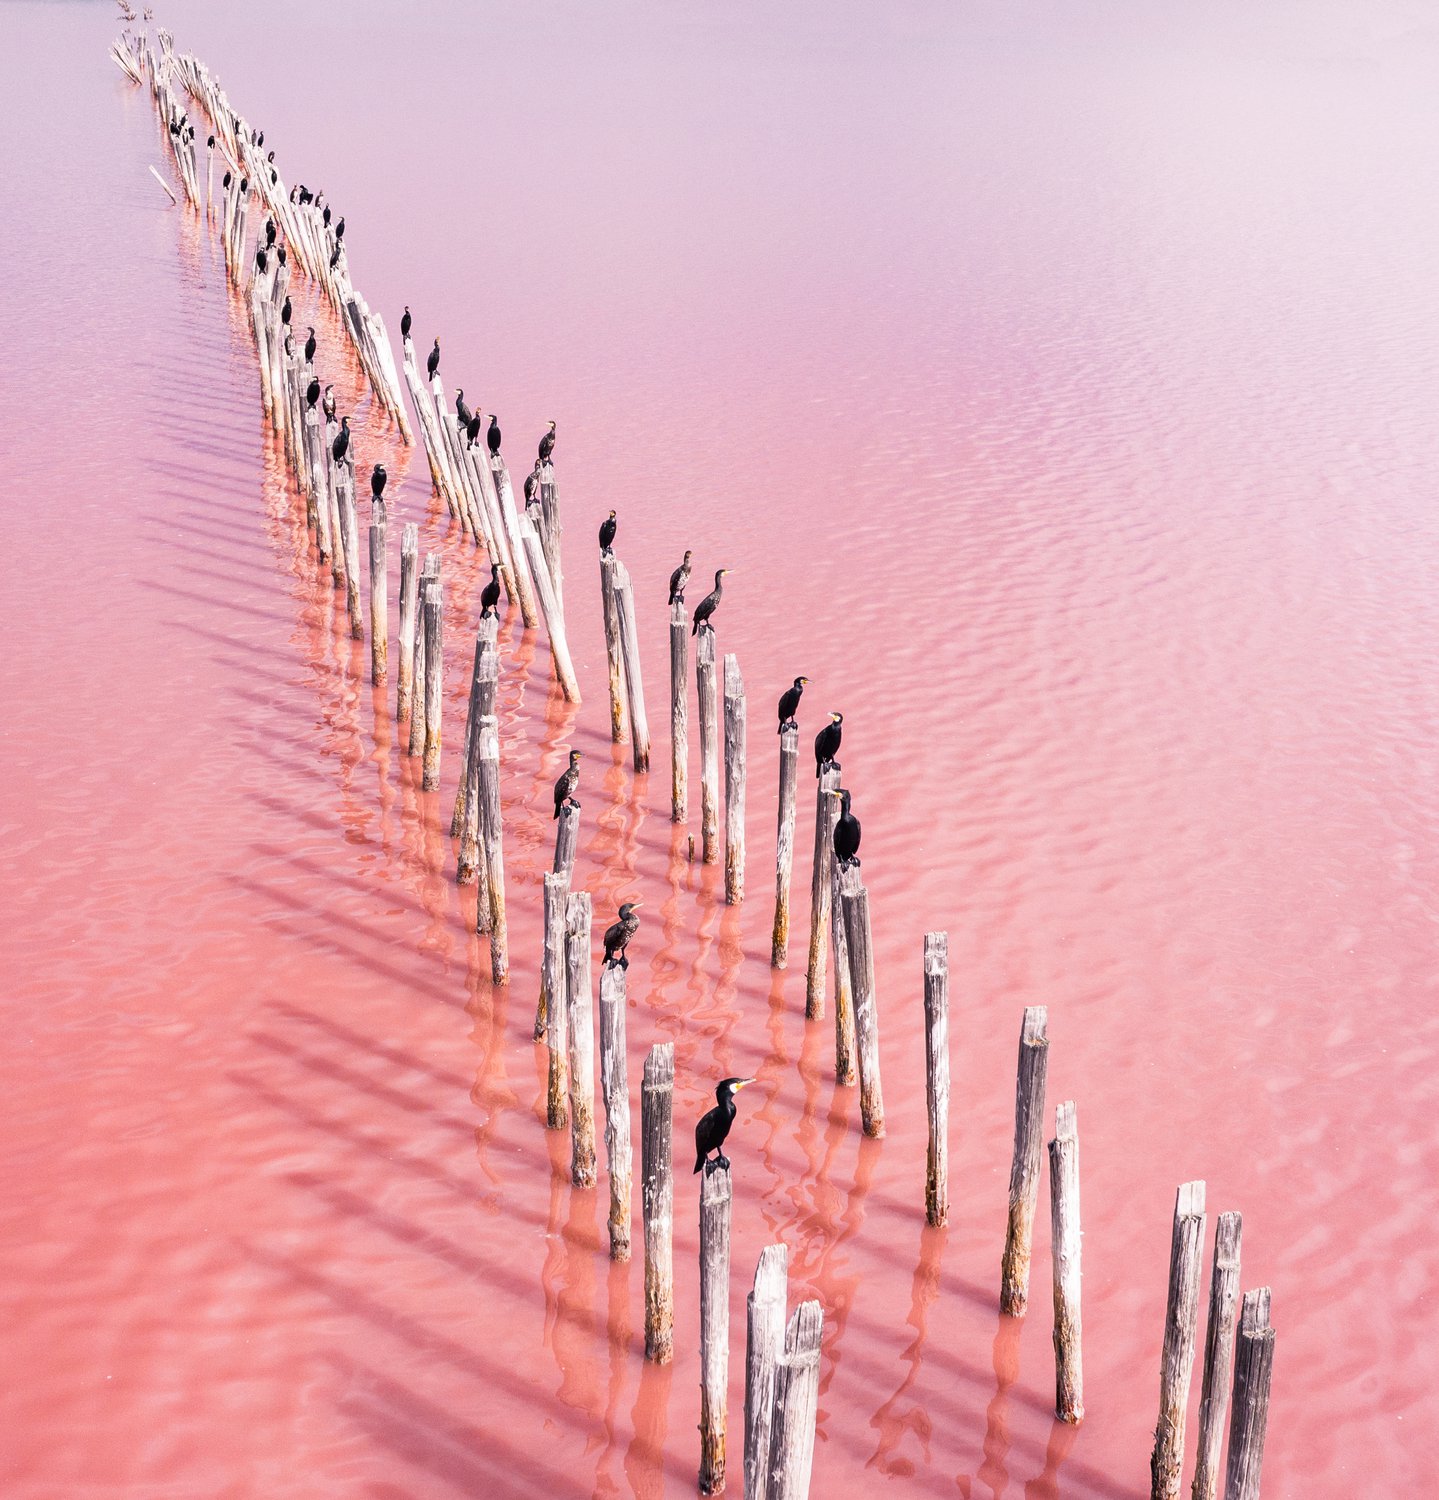 розовое озеро в крыму сиваш